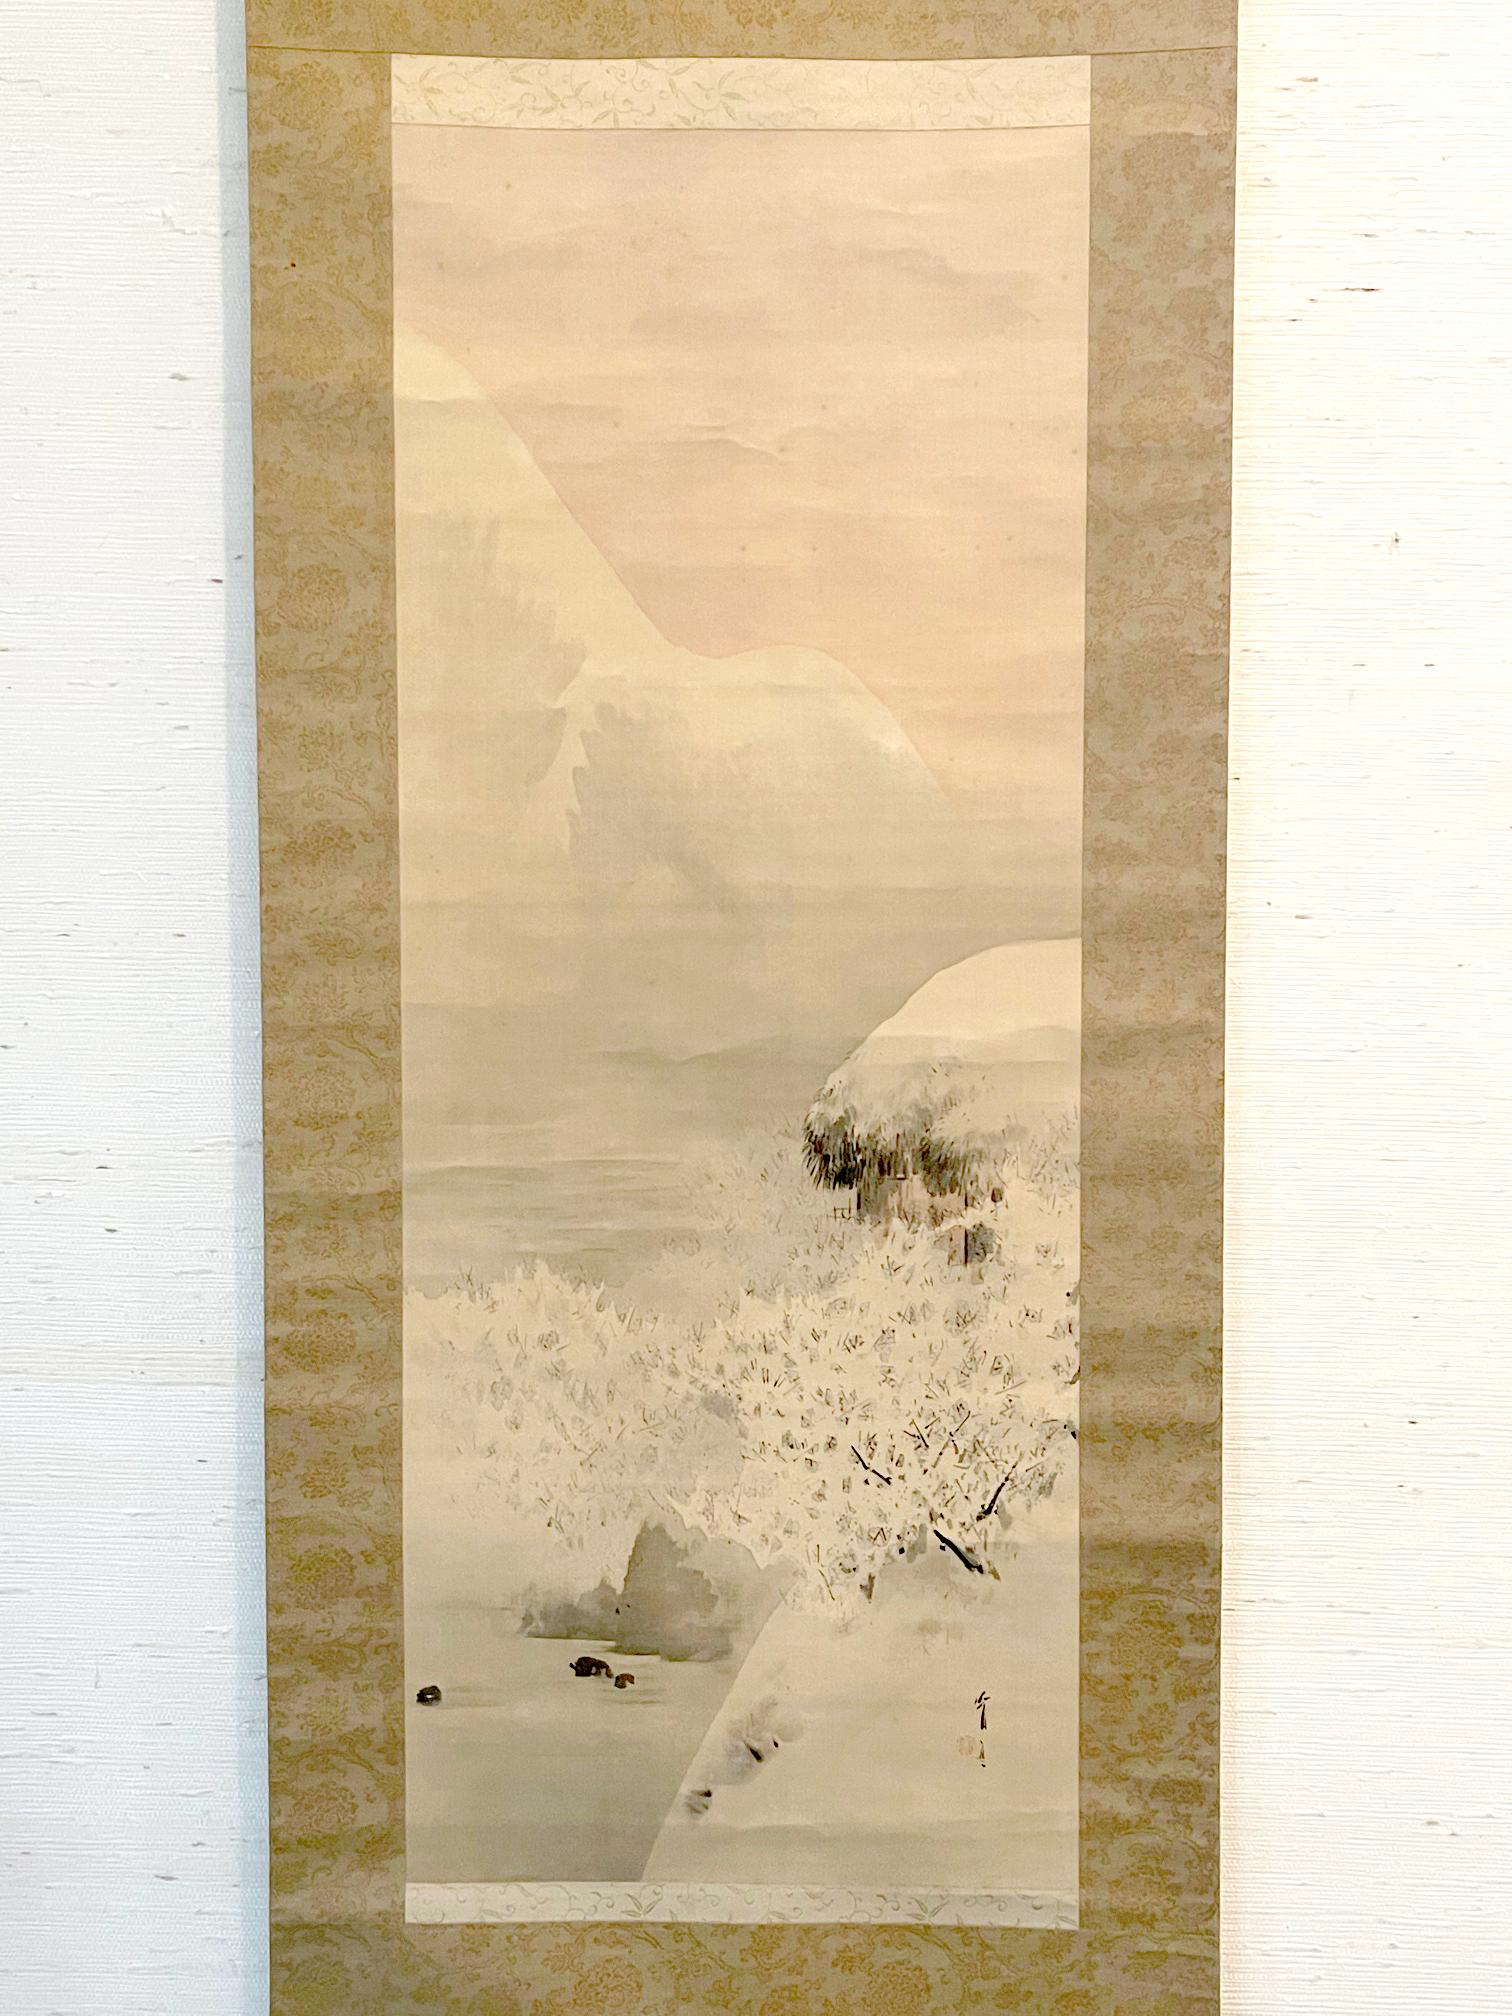 Watanabe Seitei, également connu sous le nom de Watanabe Shotei (1851-1918), est né à la fin de la période Edo. Il est l'un des premiers artistes japonais à avoir visité et s'être fait connaître en Occident. En 1878, il se rend en France et assiste